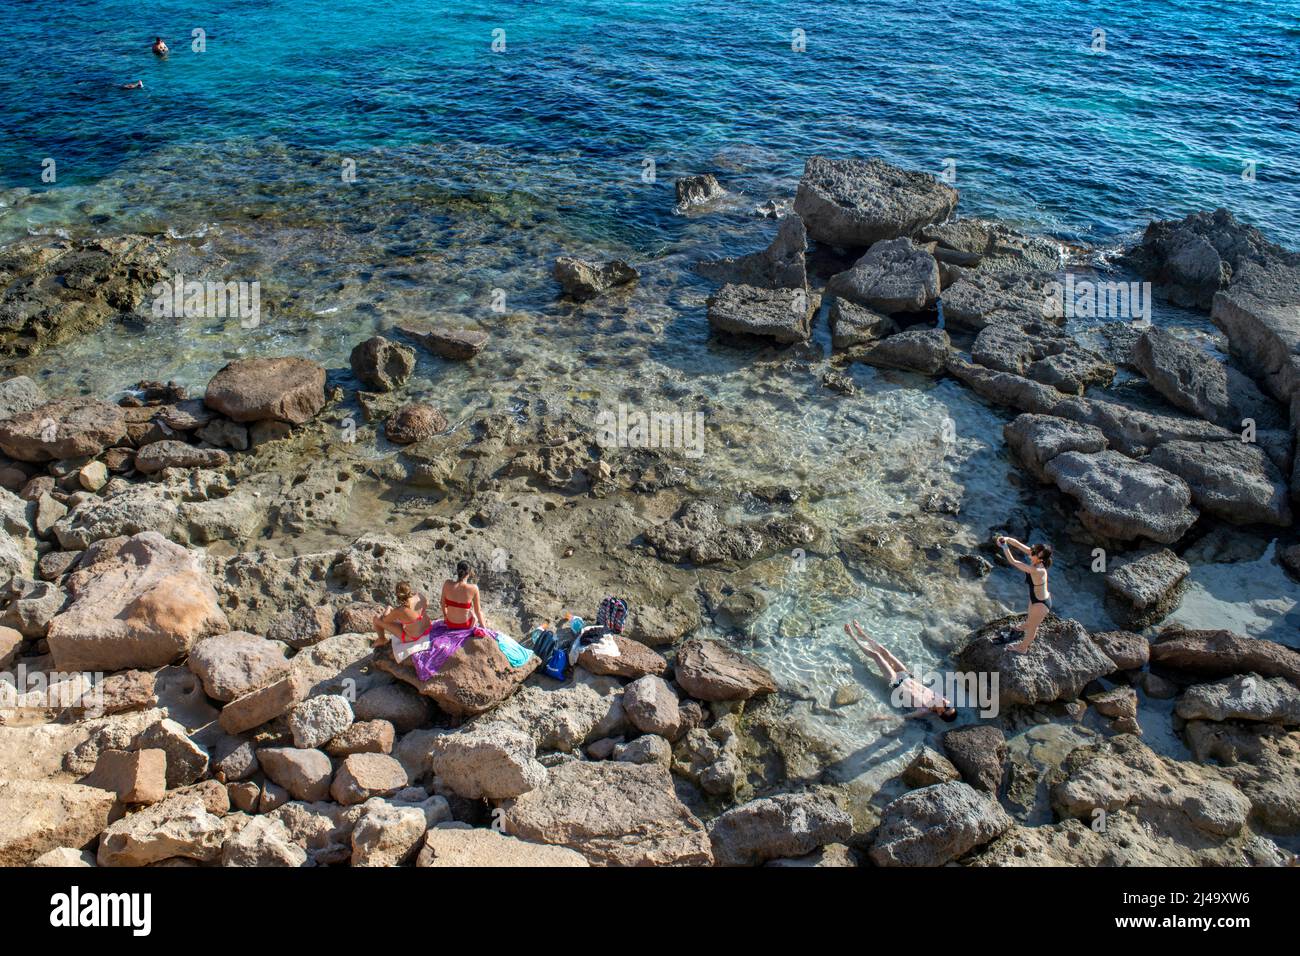 Playa de Es Caló d'es mort cala, visitantes veraniegos tumbados en una cala bordeada de acantilados rojos y rocas en un hueco de aguas turquesas, isla de Formentera Baleares Foto de stock